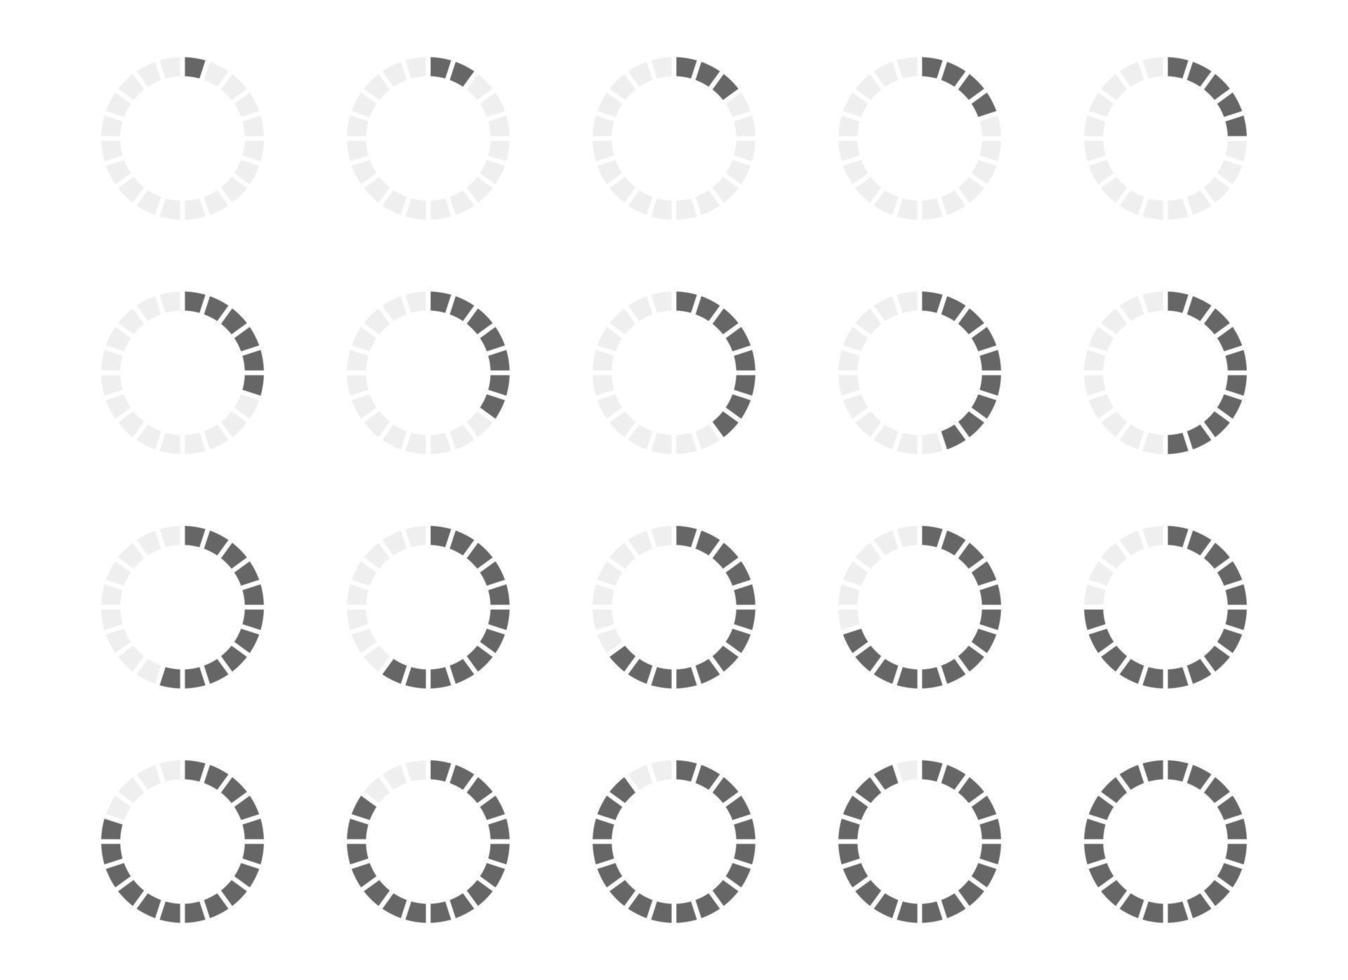 barra de carregamento redonda com enchimento de 1 a 20 segmentos. conjunto de símbolos de progresso, espera ou carregamento. elementos de animação infográfico para interface do site vetor